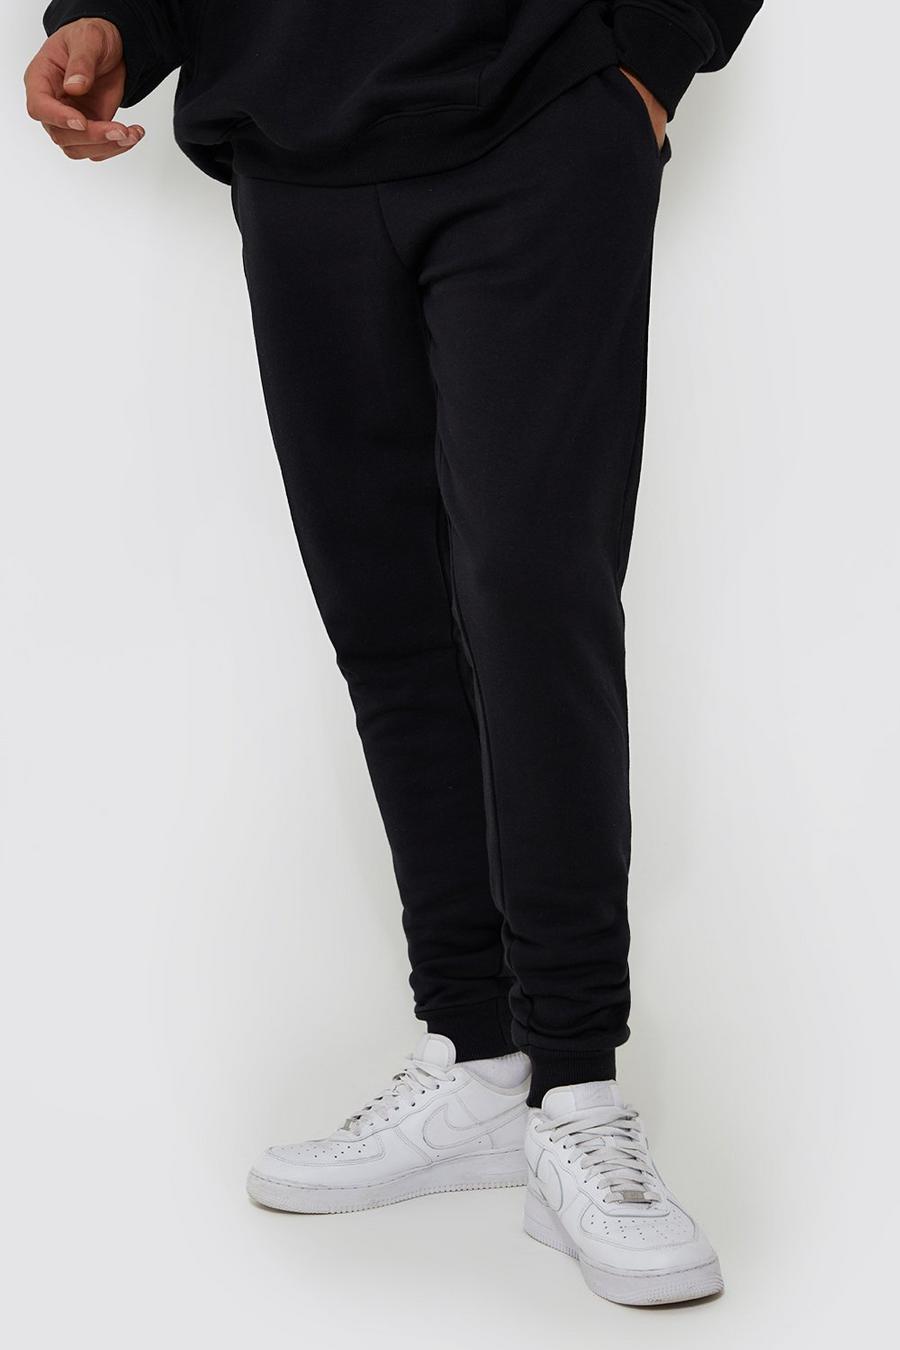 Pantalón deportivo Tall básico pitillo con algodón ecológico, Black negro